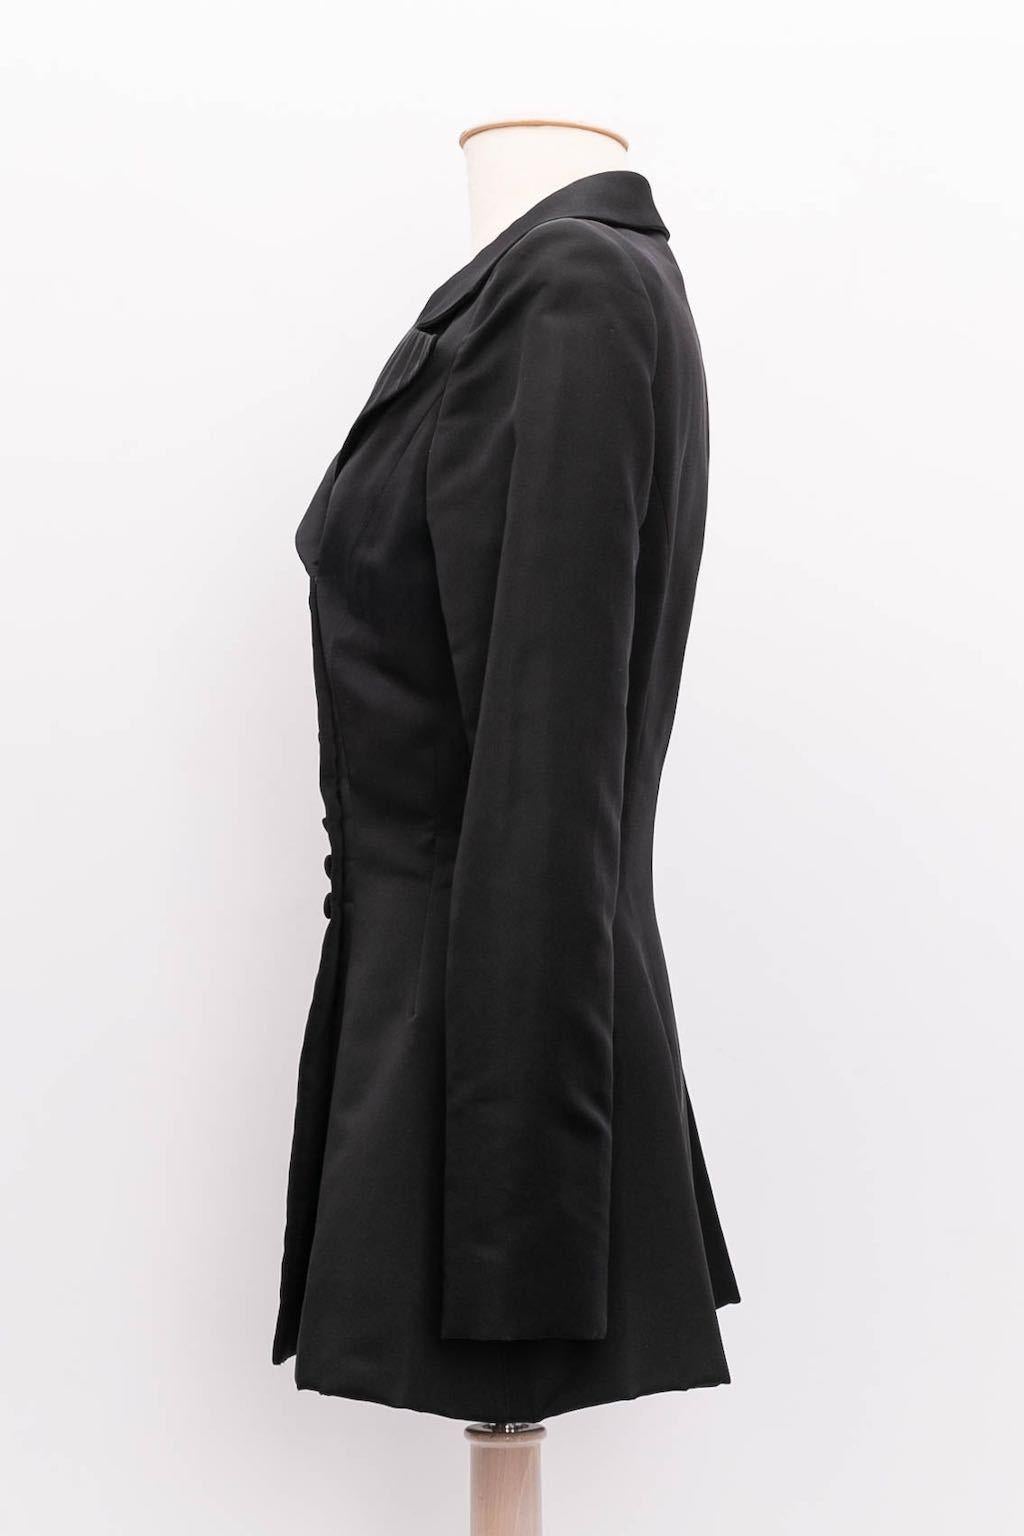 Ted Lapidus Haute Couture - Veste en satin noir avec cinq fausses poches. Pas de composition ni d'étiquette de taille, il convient à une taille 36FR.

Informations complémentaires :
Condit : Très bon état.
Dimensions : Épaules : 42 cm (16.53